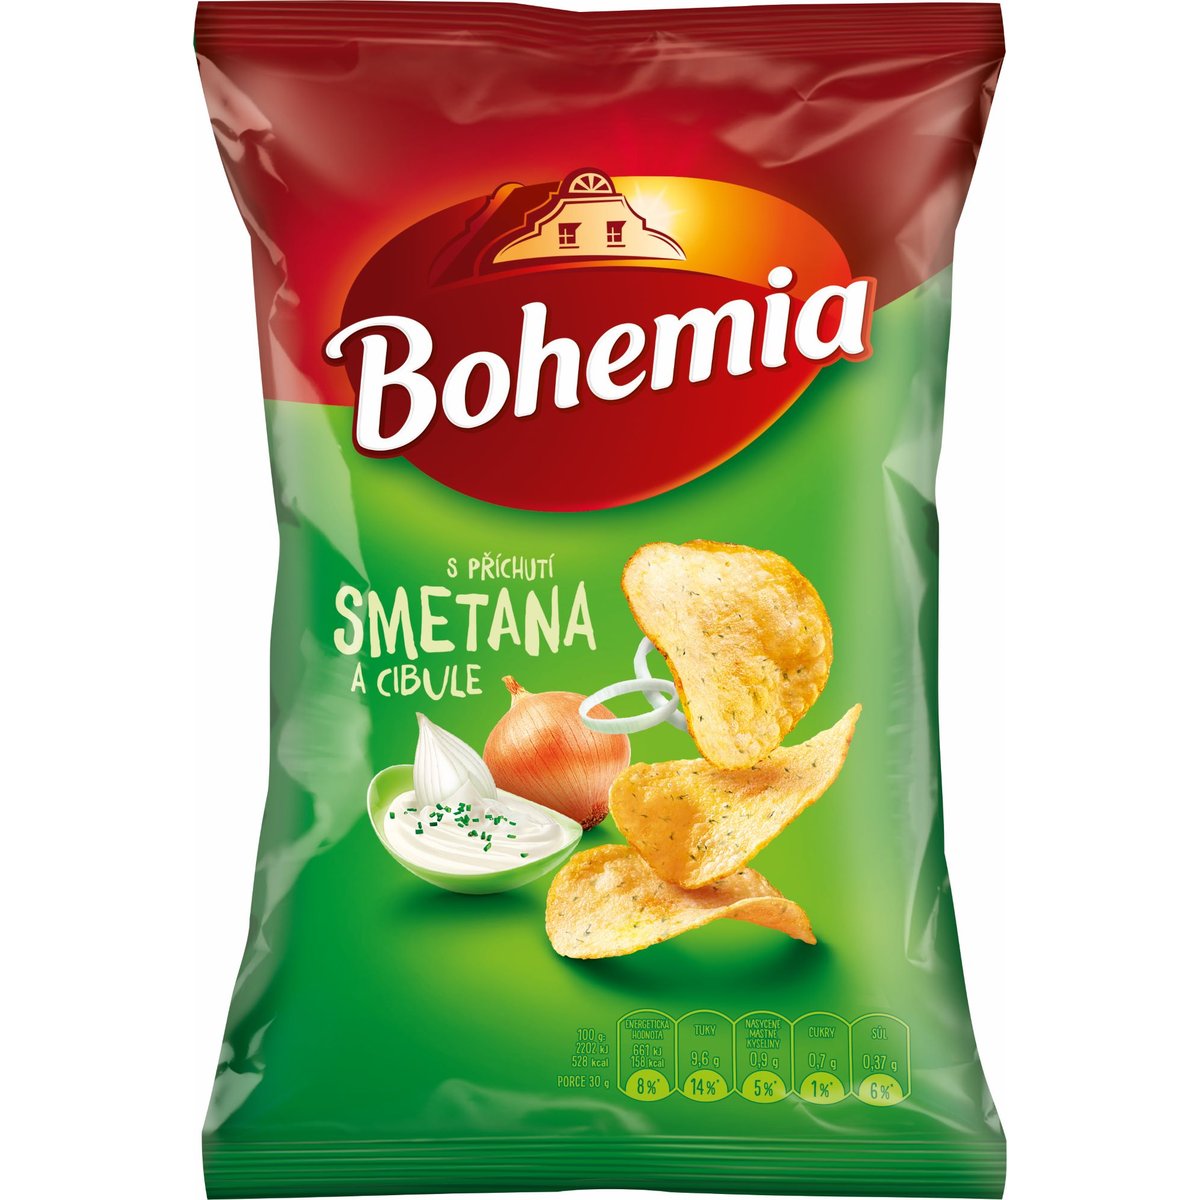 Bohemia Smetana a cibule